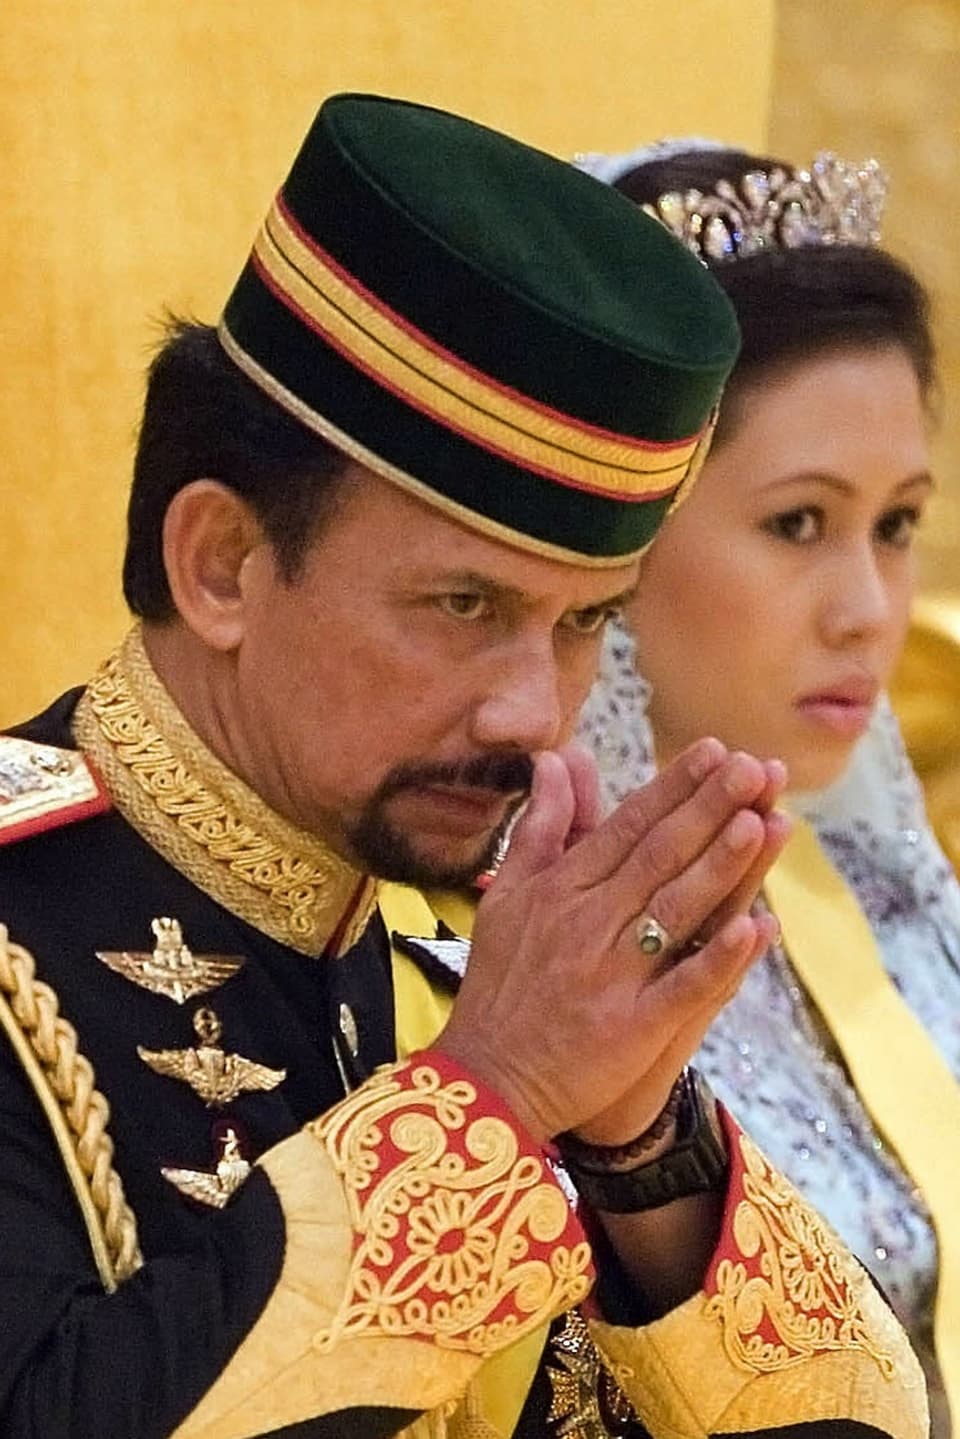 Sultan Hassanal Bolkiah mit schwarzem Hut und golden verzierter Uniform.